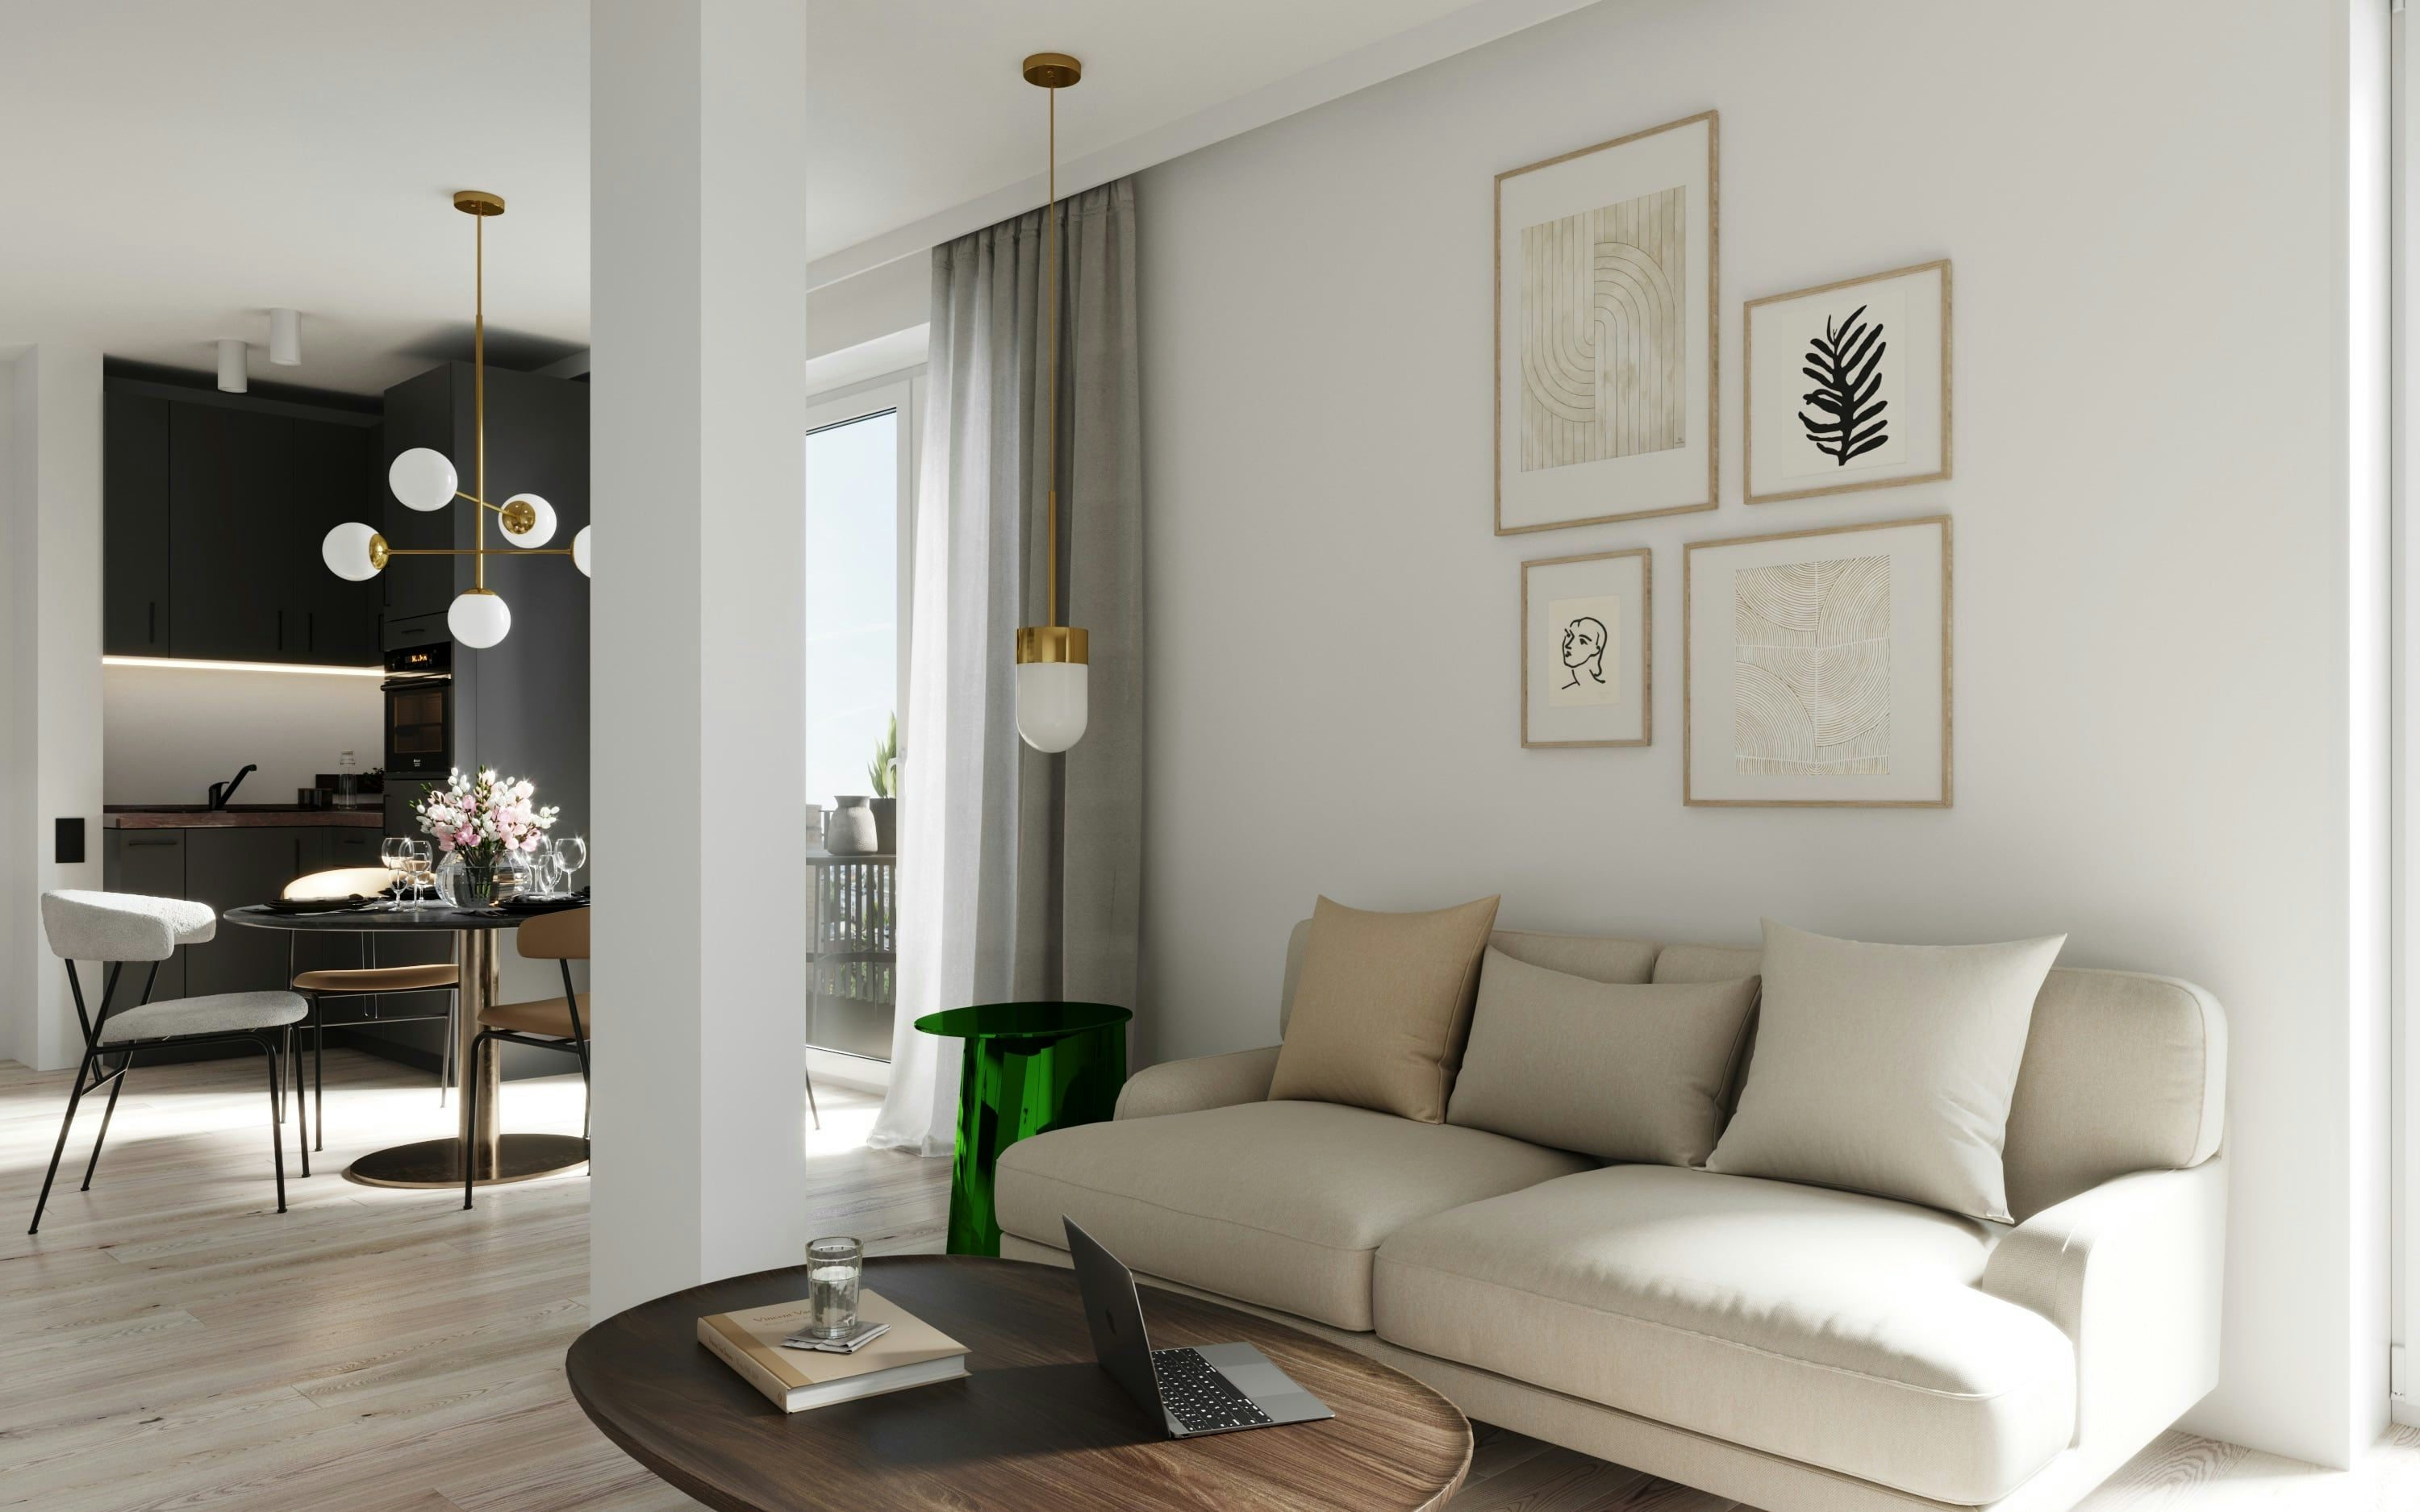 3D Innen Architektur Visualisierung des Wohnraums in einer offenen Penthouse Wohnung in einem Mehrfamilienhaus in Hamburg Eimsbüttel, Deutschland